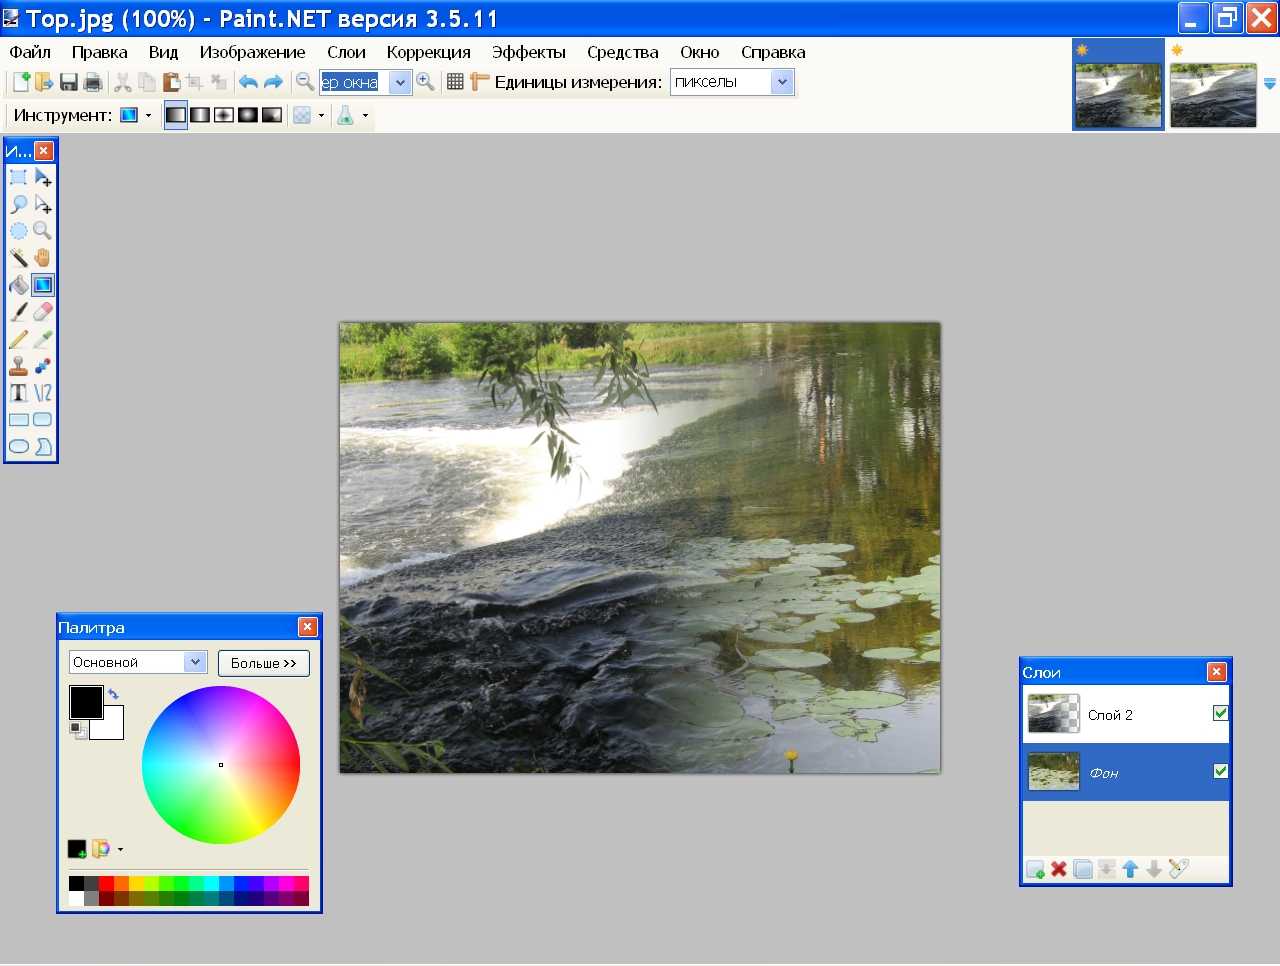 Paint - графический редактор, как пользоваться